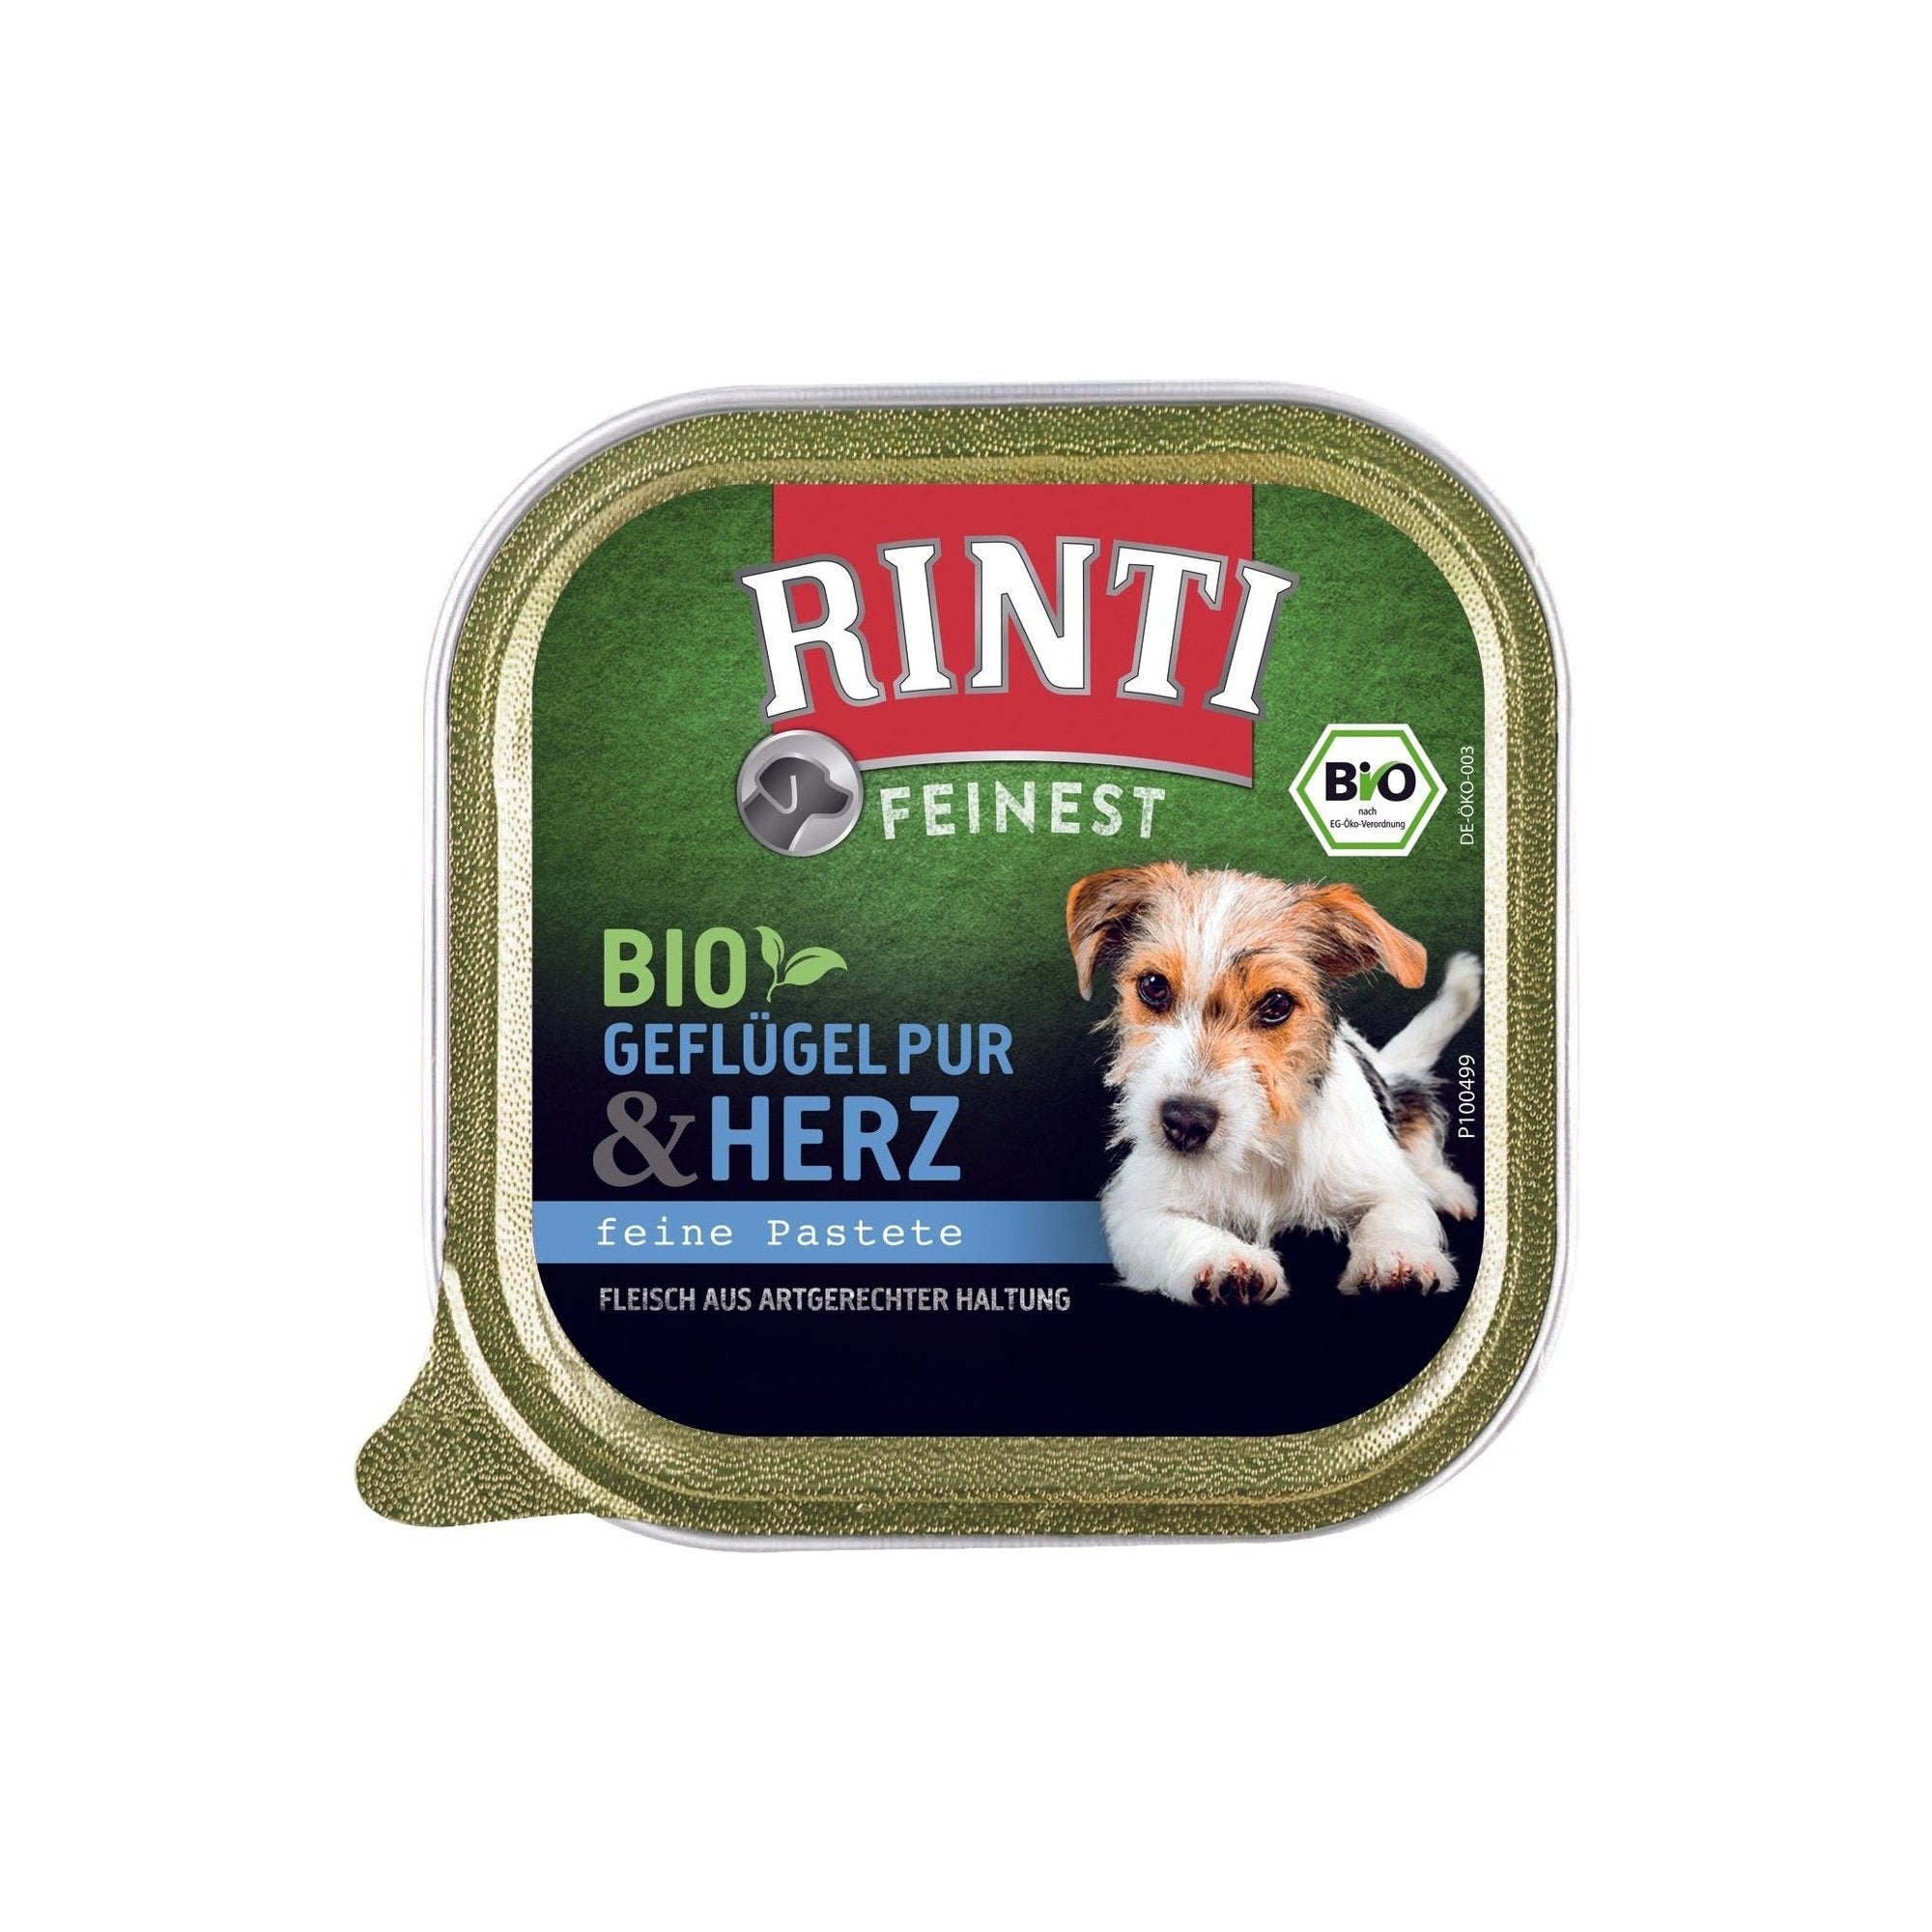 Artikel mit dem Namen Rinti Bio Geflügel und Herz im Shop von zoo.de , dem Onlineshop für nachhaltiges Hundefutter und Katzenfutter.